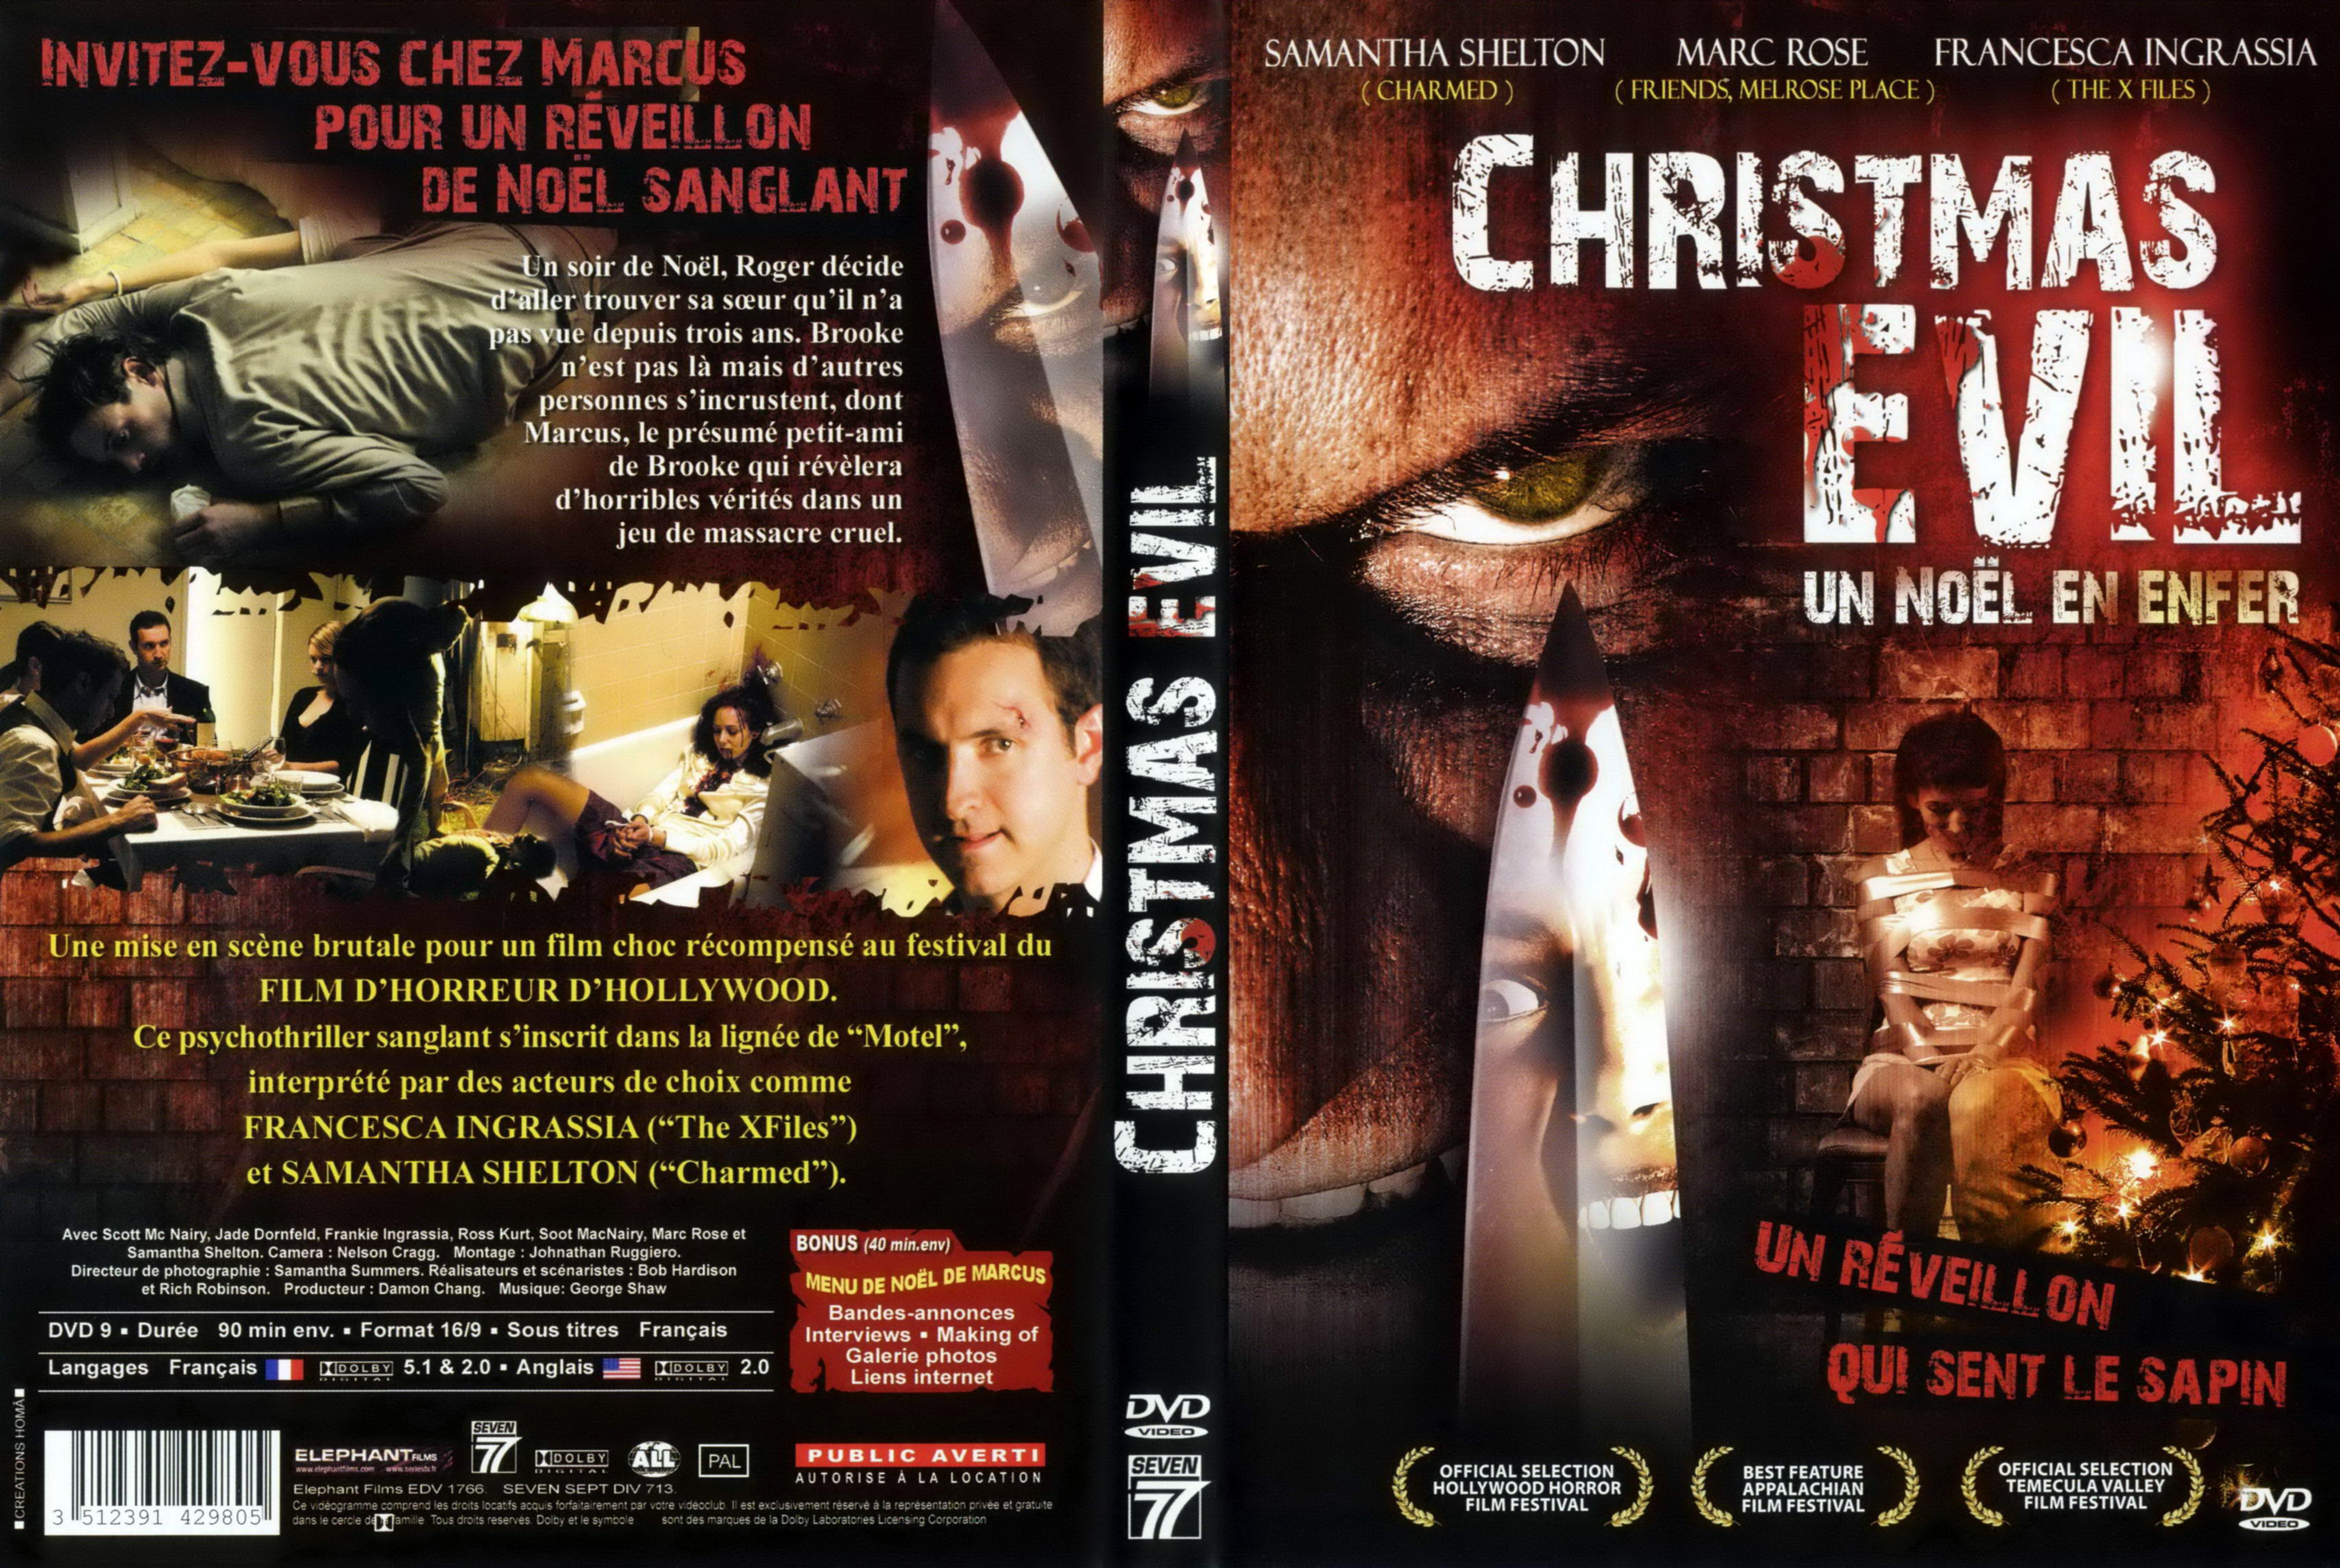 Jaquette DVD Christmas evil